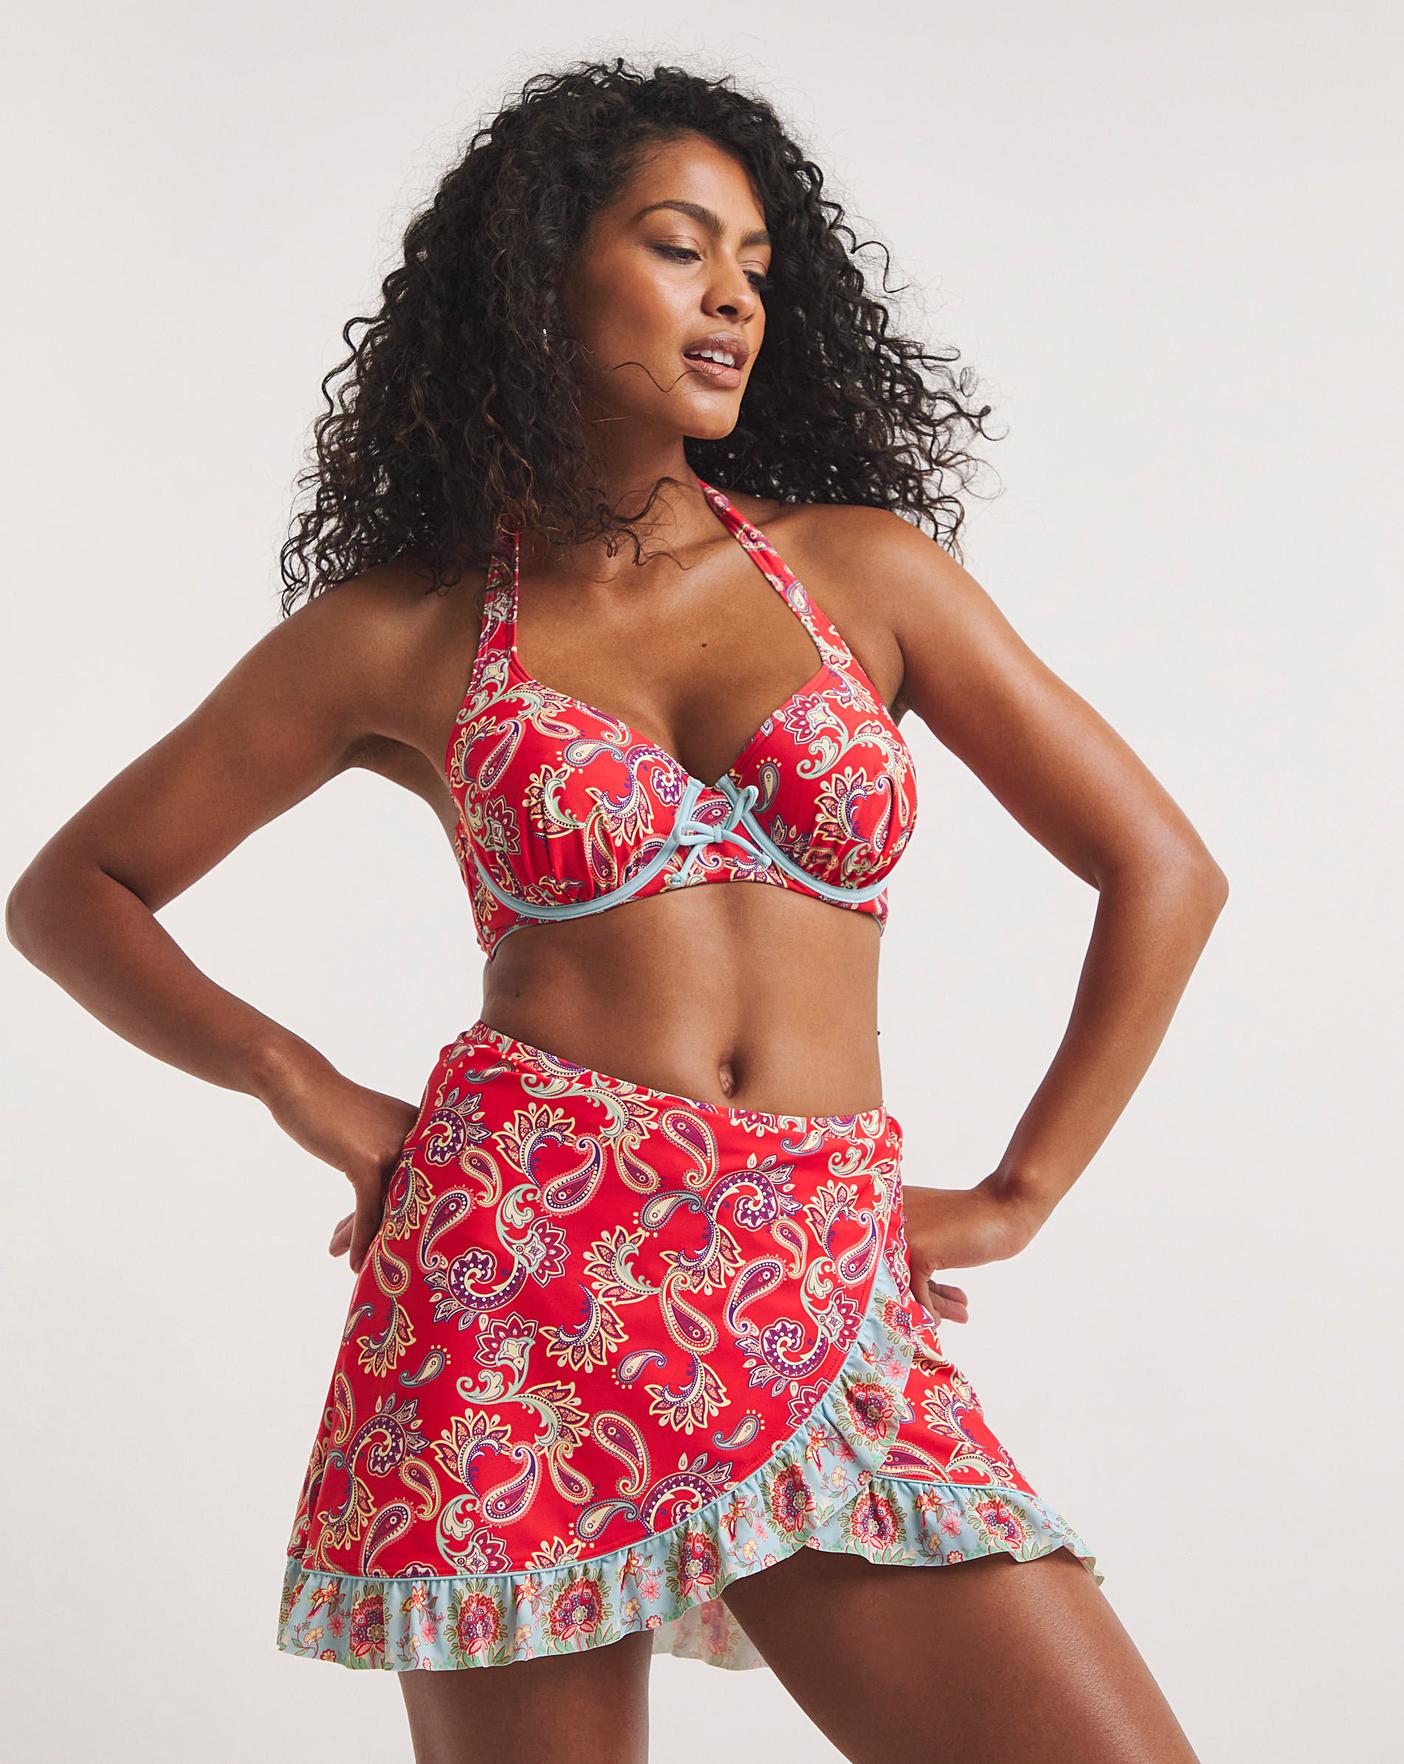 Versatile Printed Bikini Set with Playful Skirt